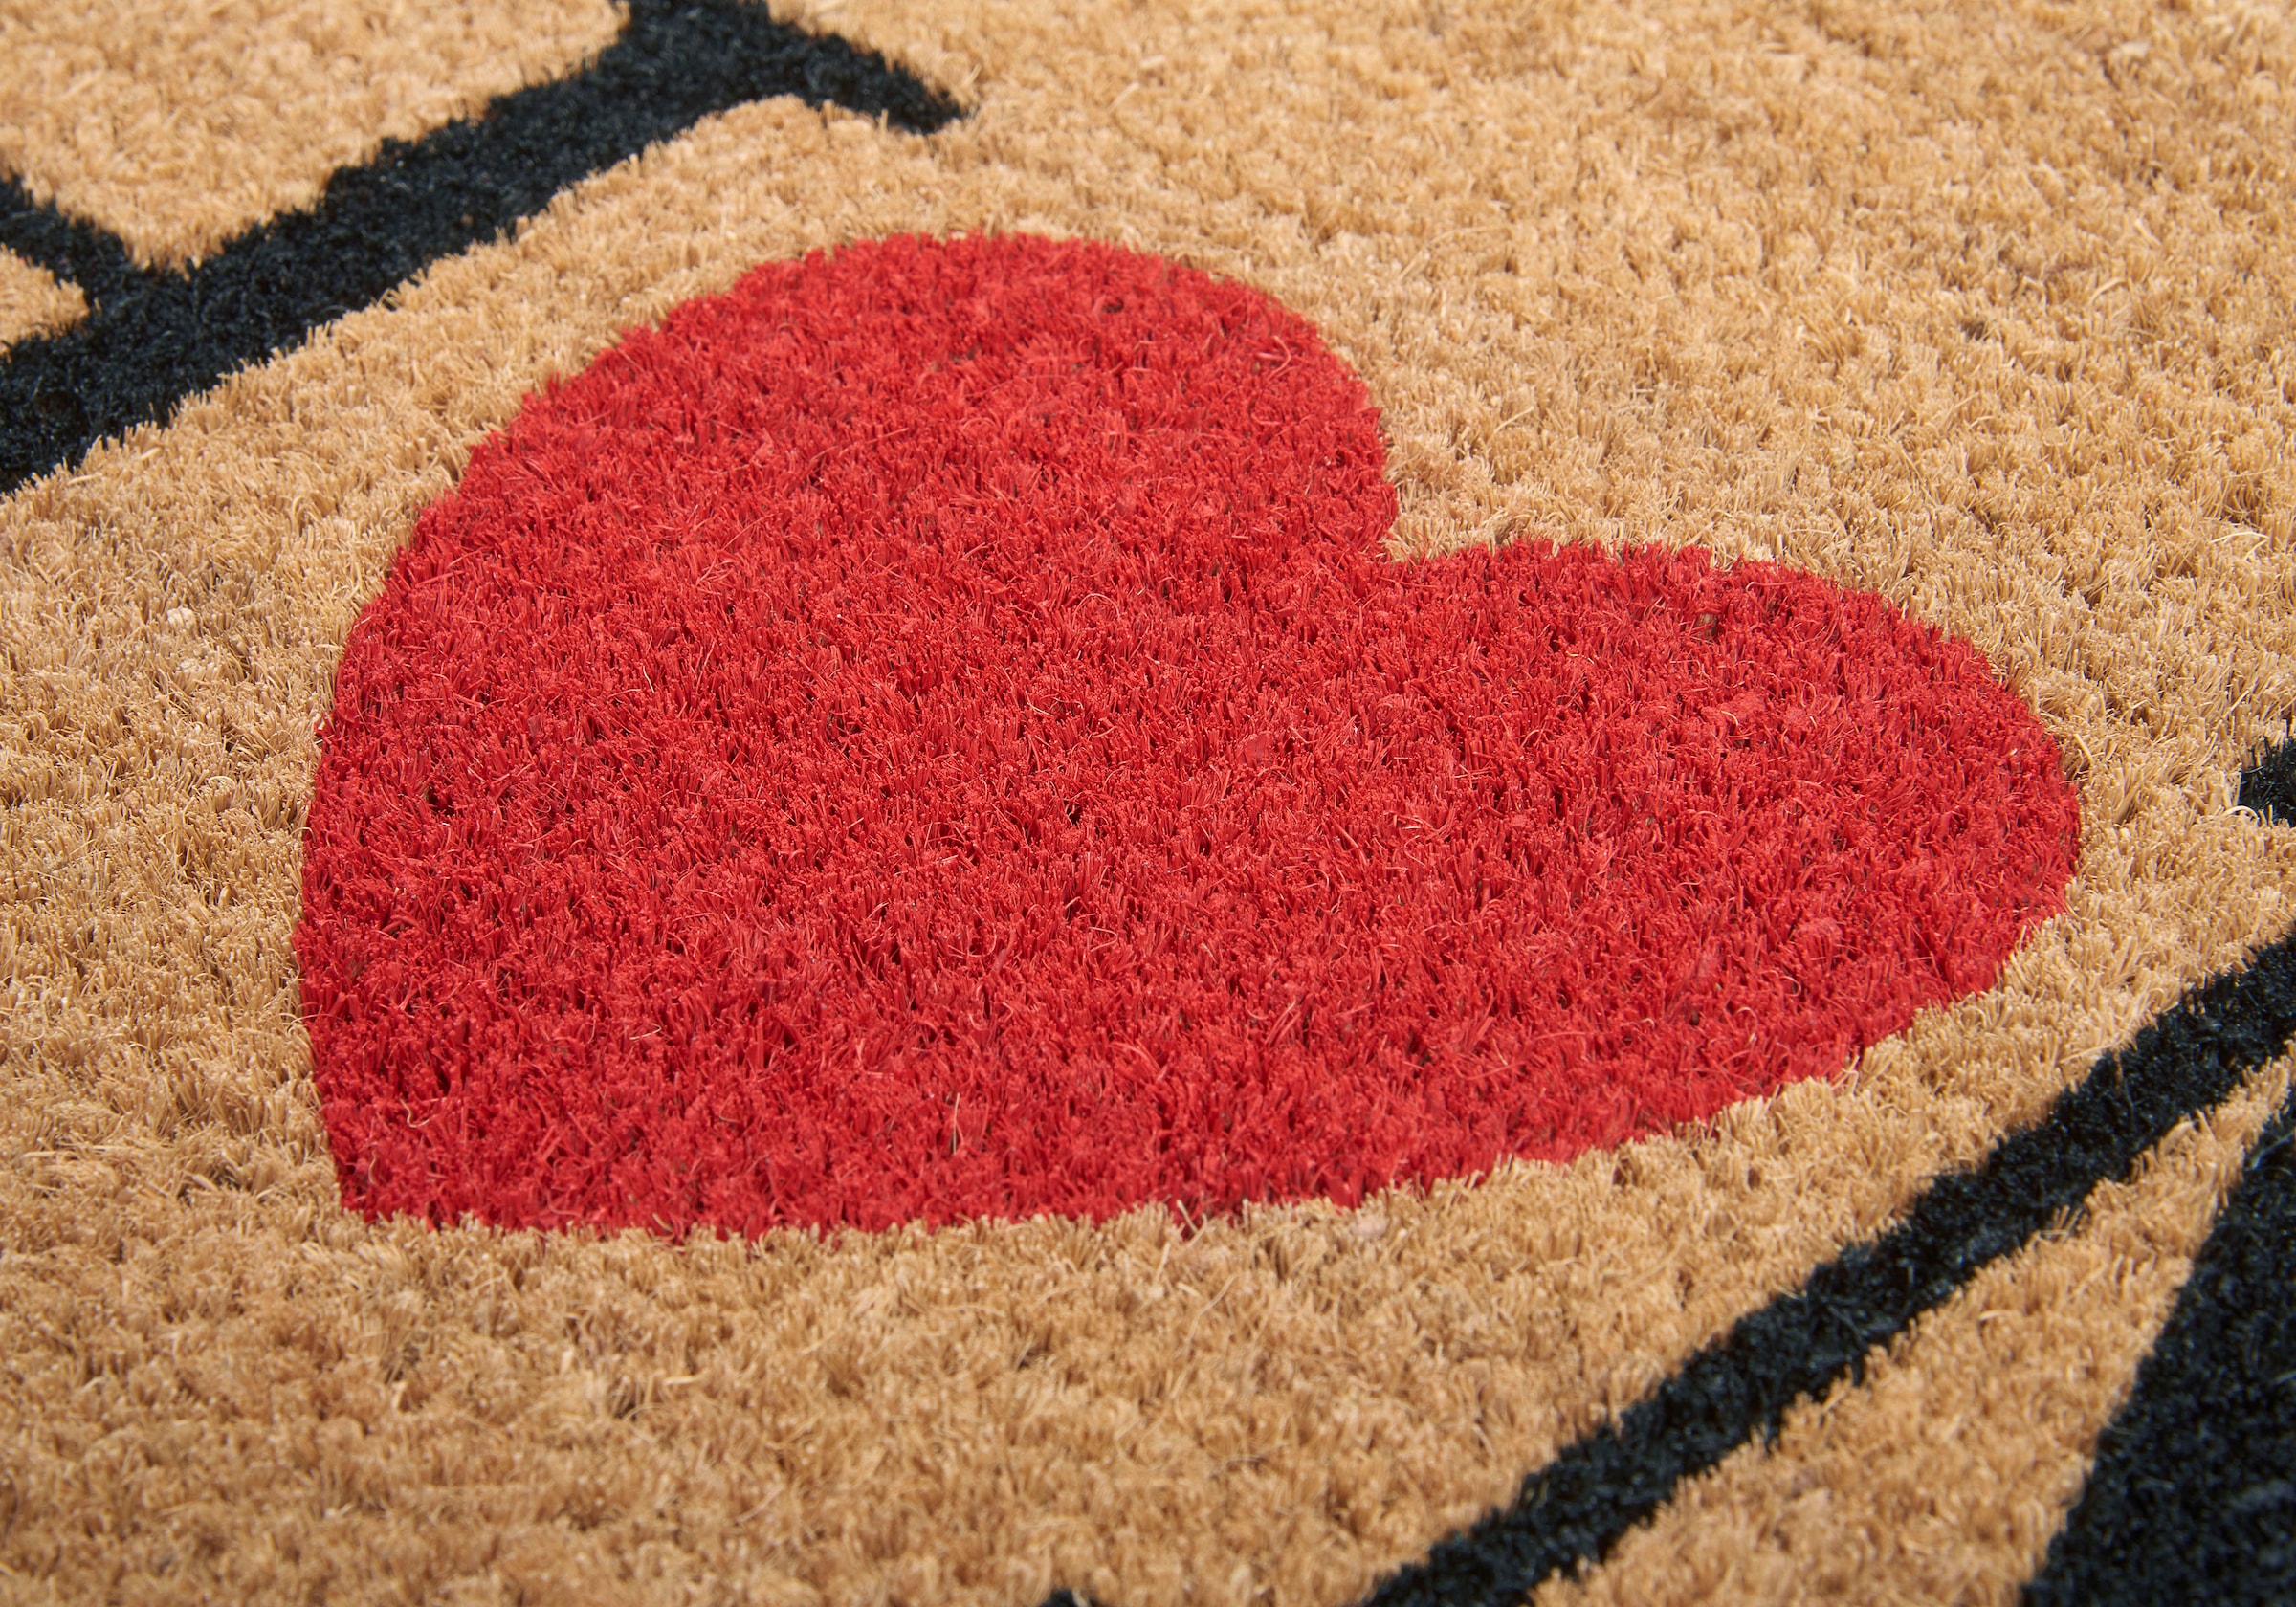 HANSE Home Fußmatte »Mix Mats Kokos Home With Heart«, rechteckig, Kokos, Schmutzfangmatte, Outdoor, Rutschfest, Innen, Kokosmatte, Flur